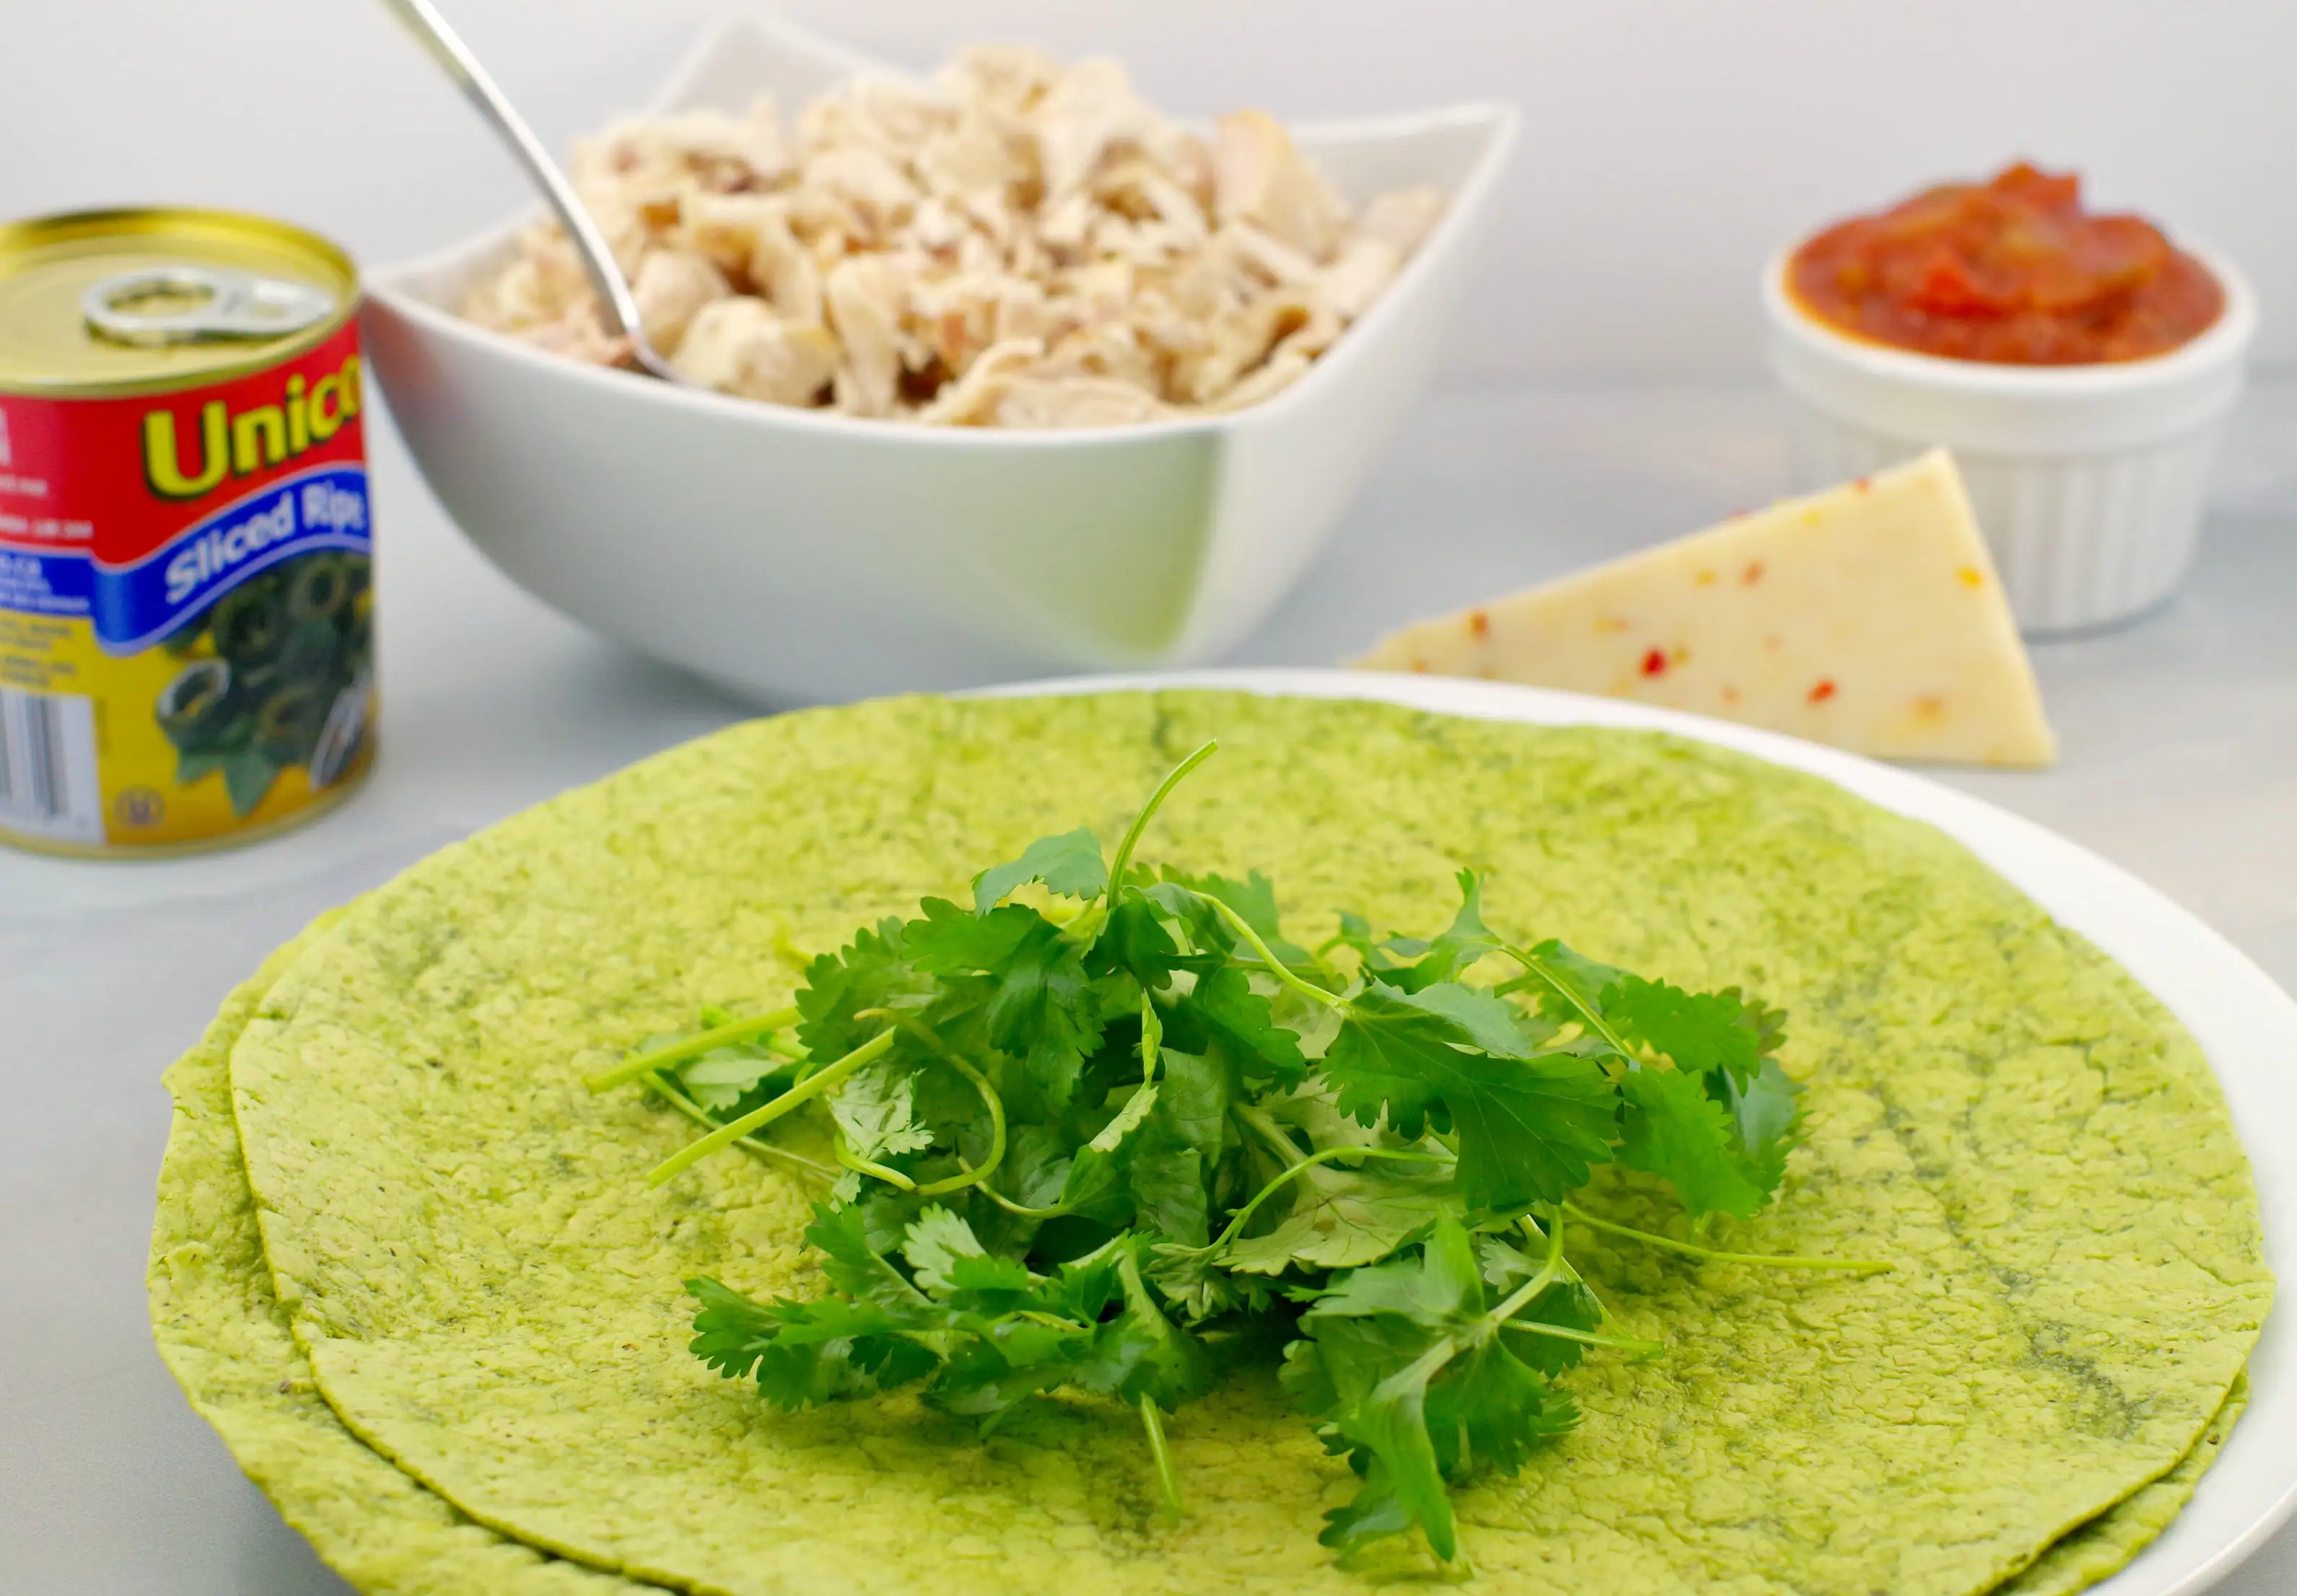 Easy Chicken Quesadillas ingredients - Foodmeanderings.com